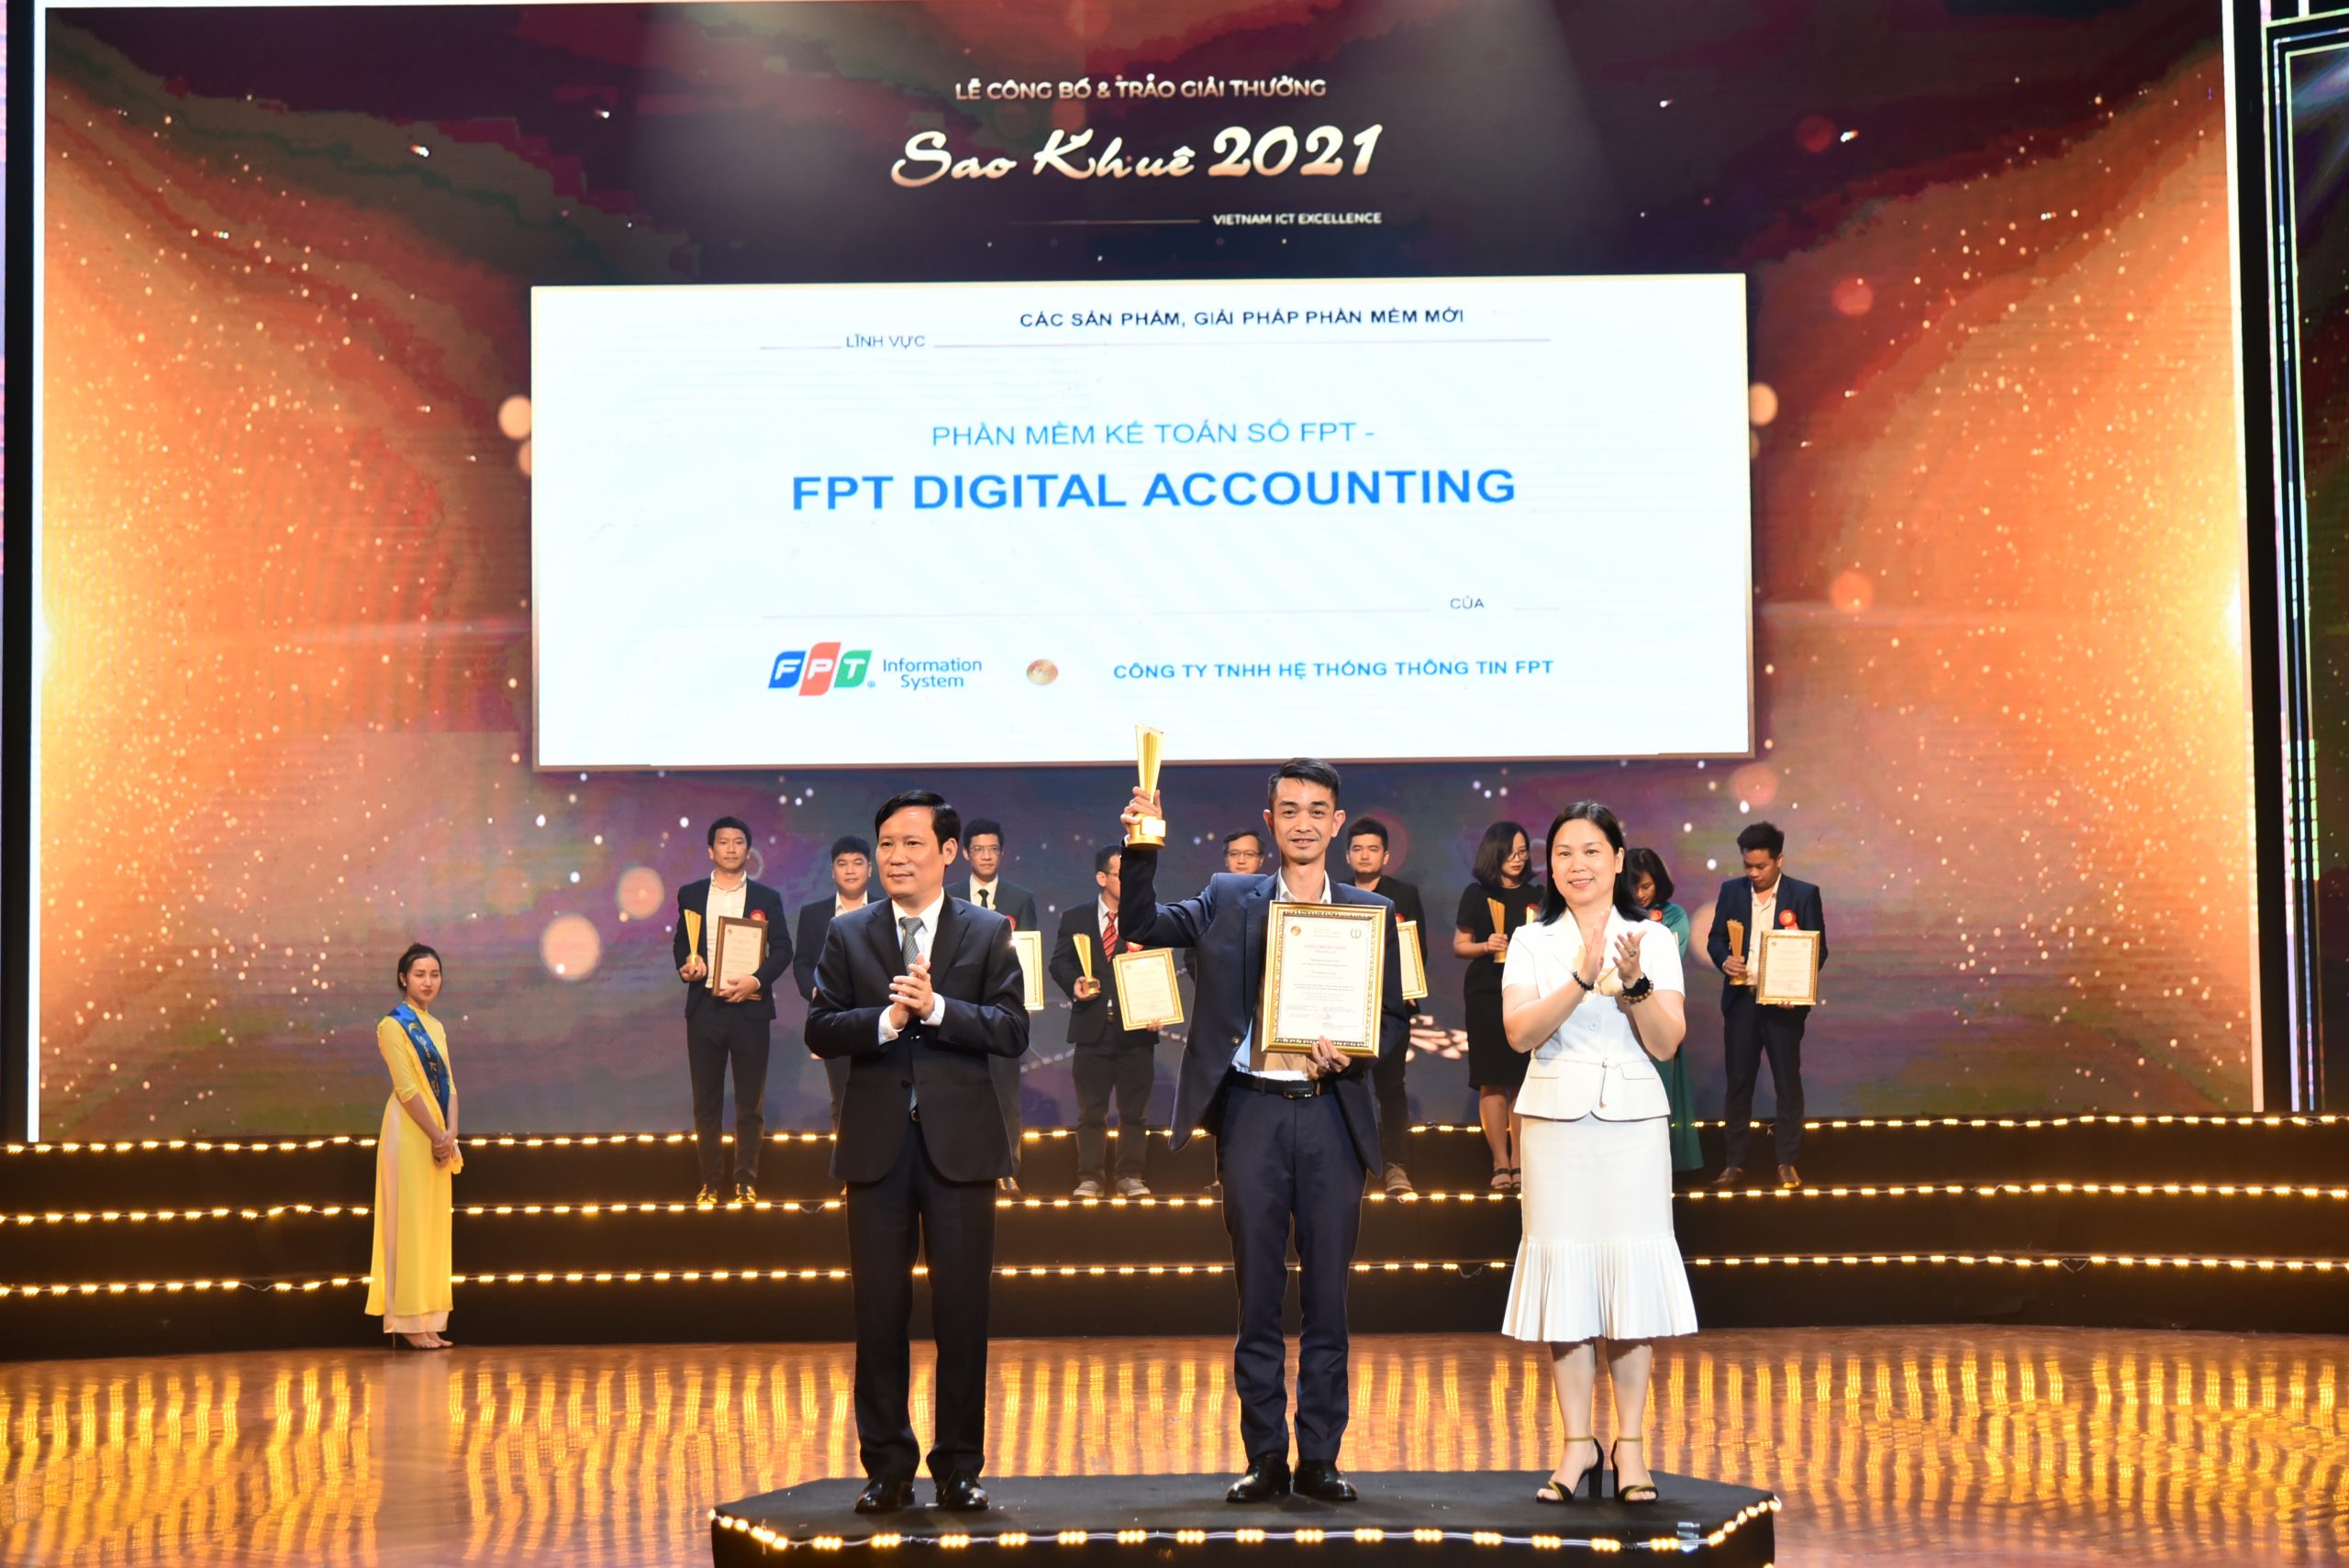 Phần mềm kế toán số FPT – FPT Digital Accounting đạt Giải thưởng Sao Khuê 2021